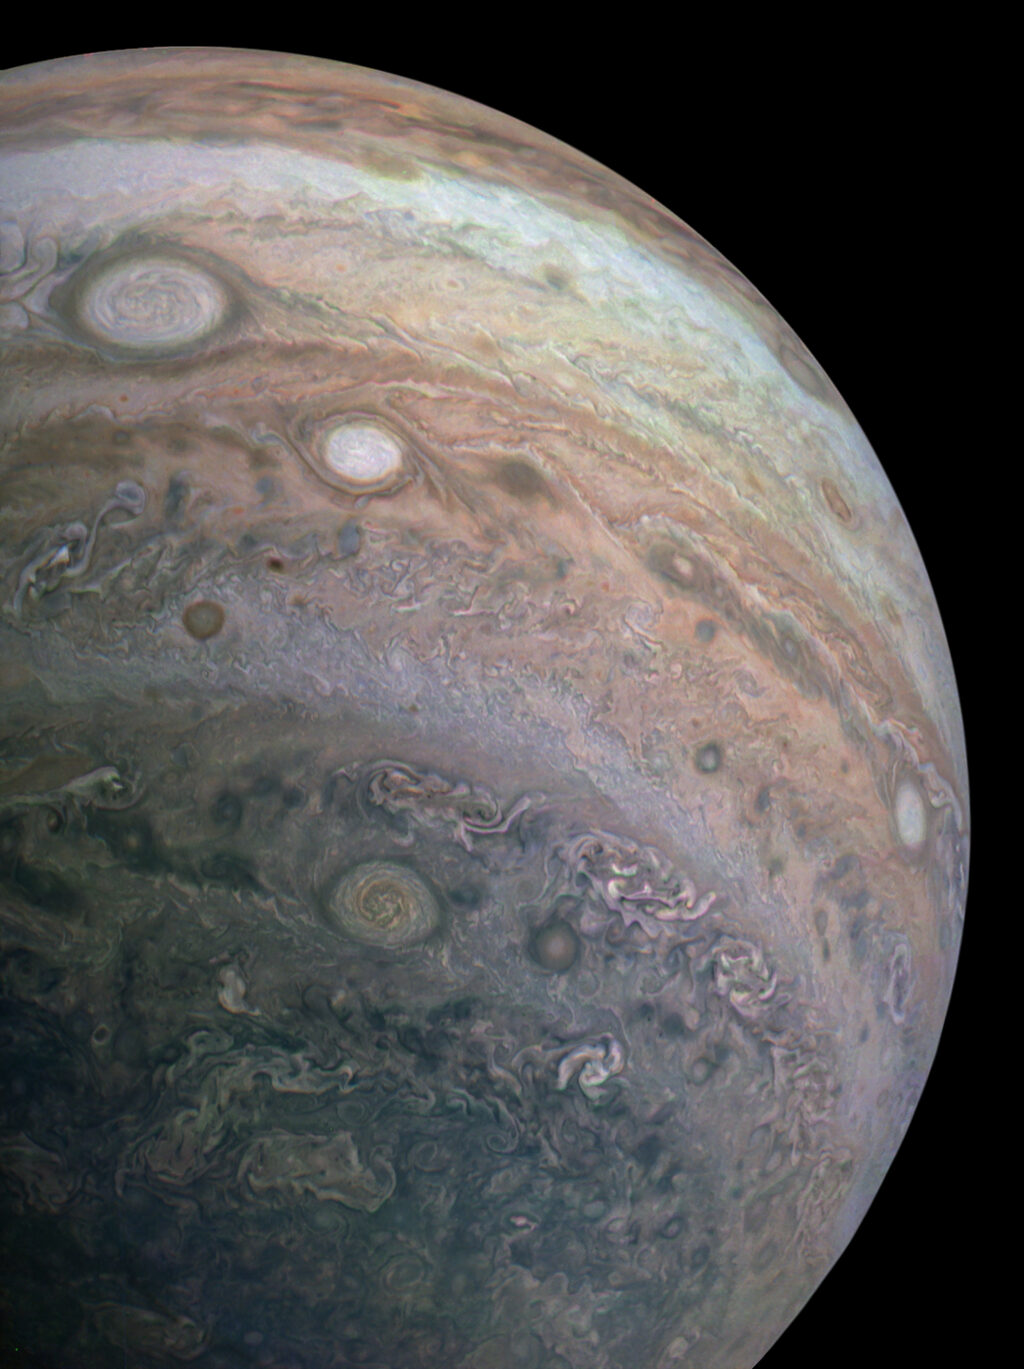 Bande nell'atmosfera di Giove presso le latitudini sud. Immagine ripresa da Juno durante il PJ26. Credit: NASA/JPL-Caltech/SwRI/MSSS/David Marriott